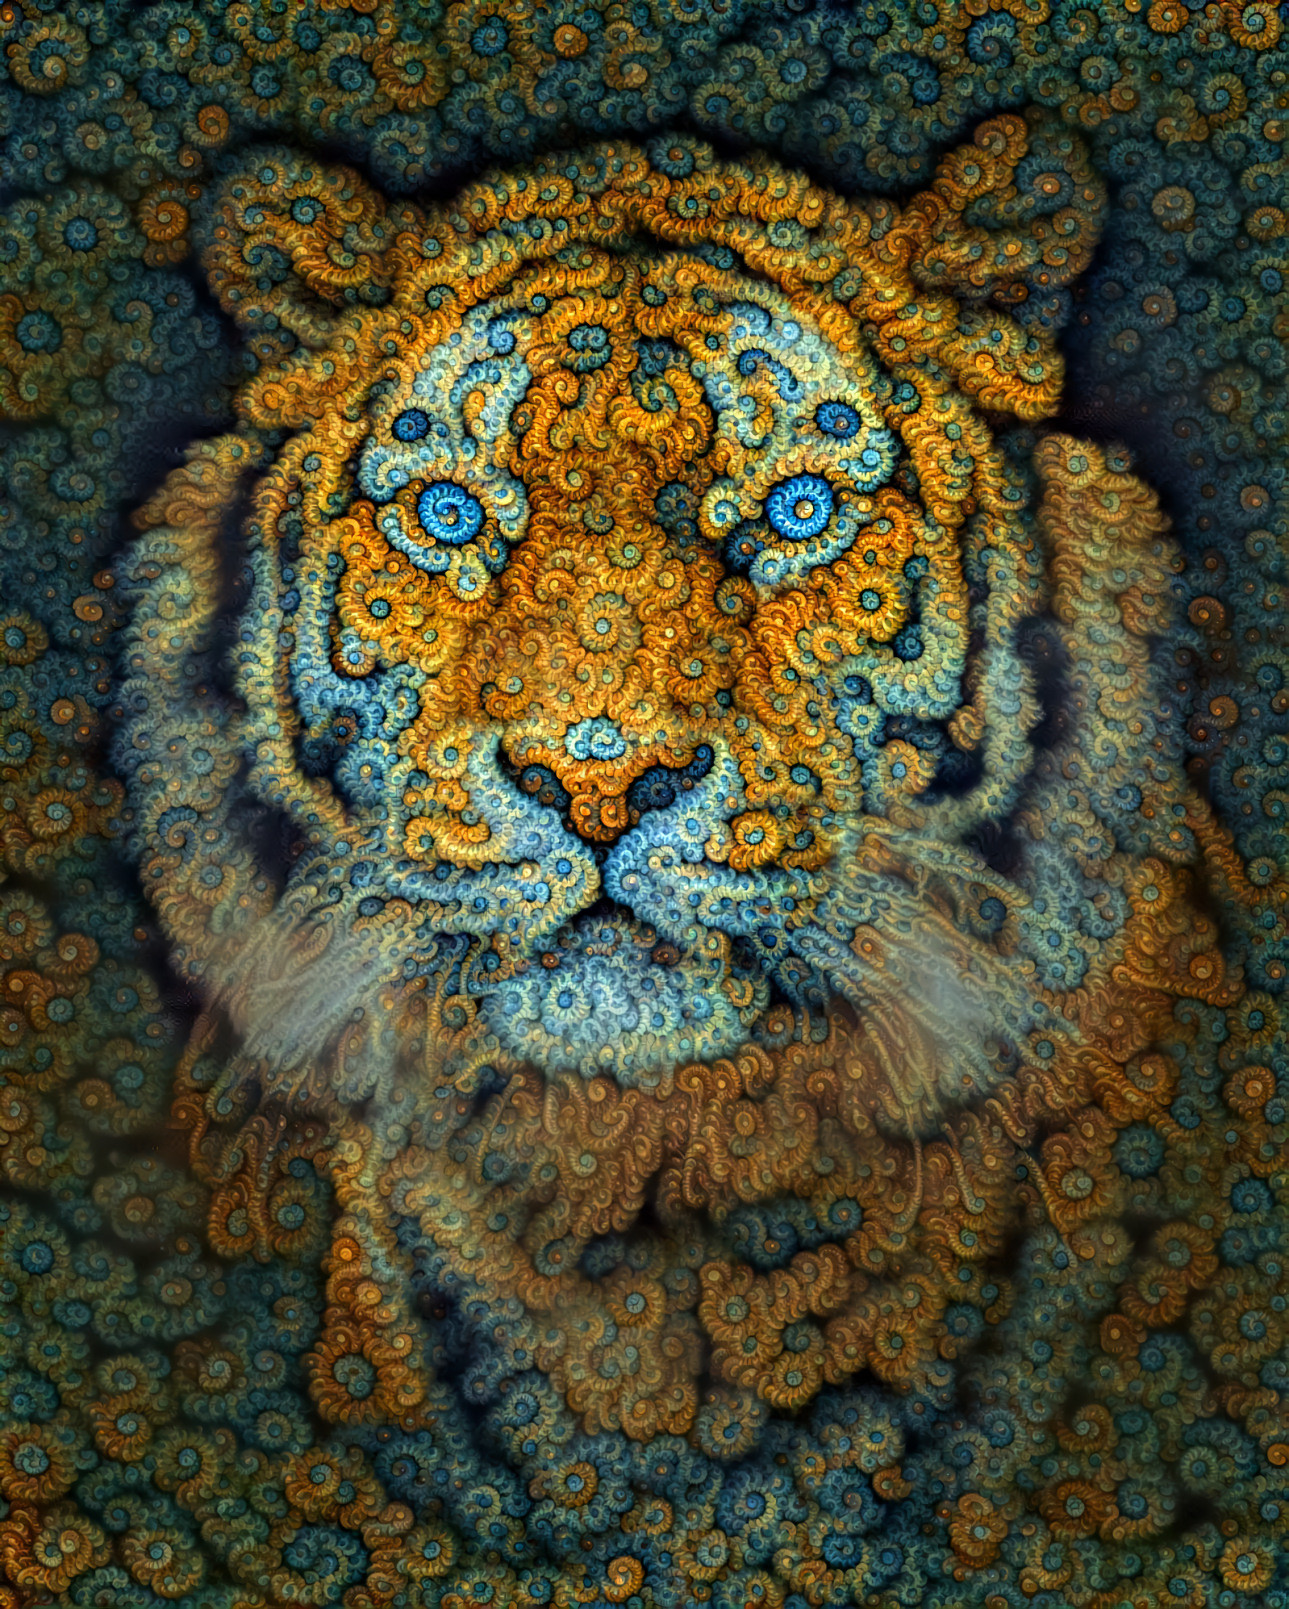 Real fractal tiger